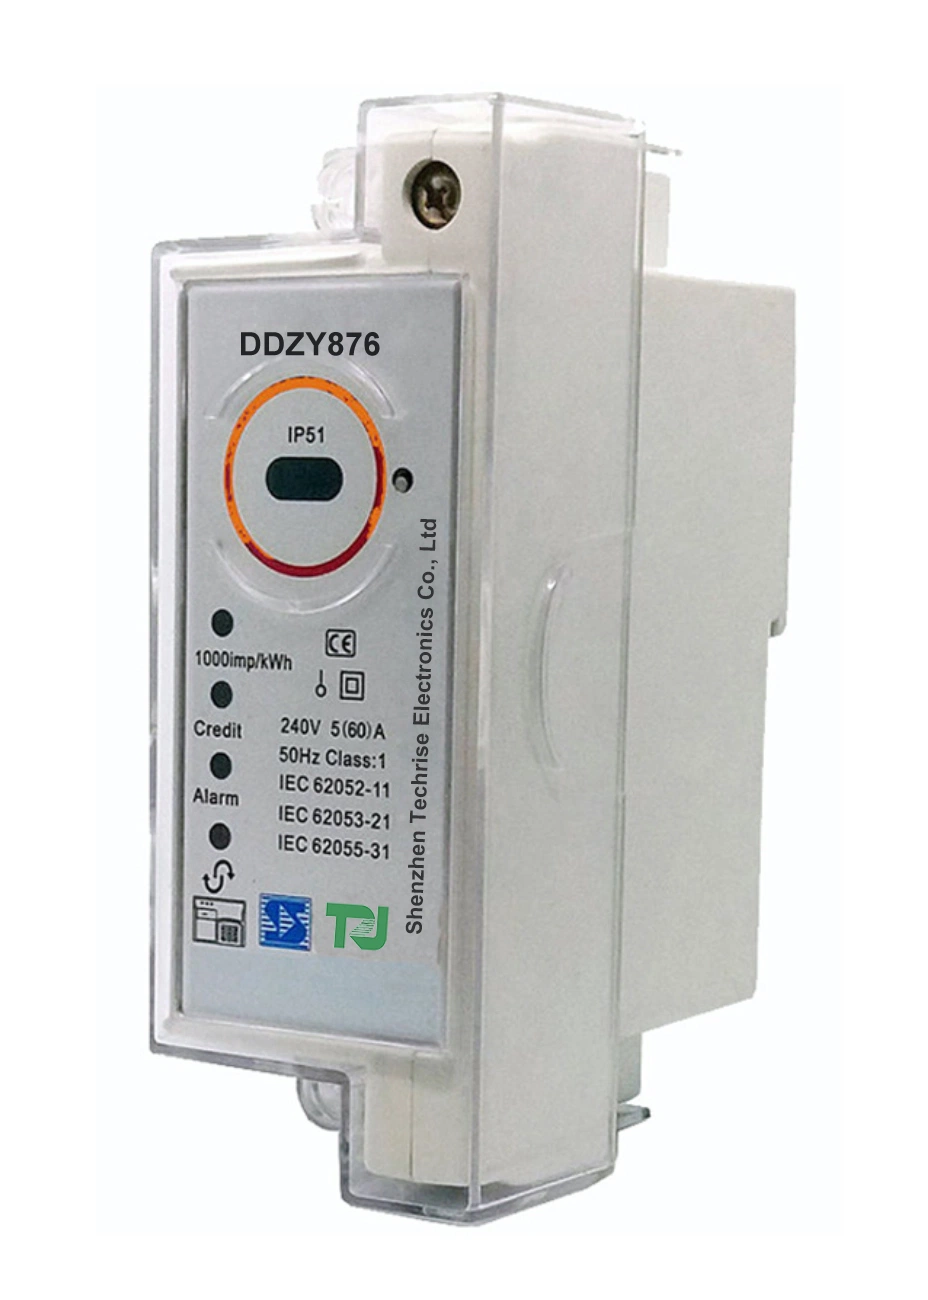 DDZY876 STS Prepago Postpago de una sola fase dos alambres DIN-carril Split Medidor de energía inteligente de comunicación de módulo PLC RF Lora electrónico